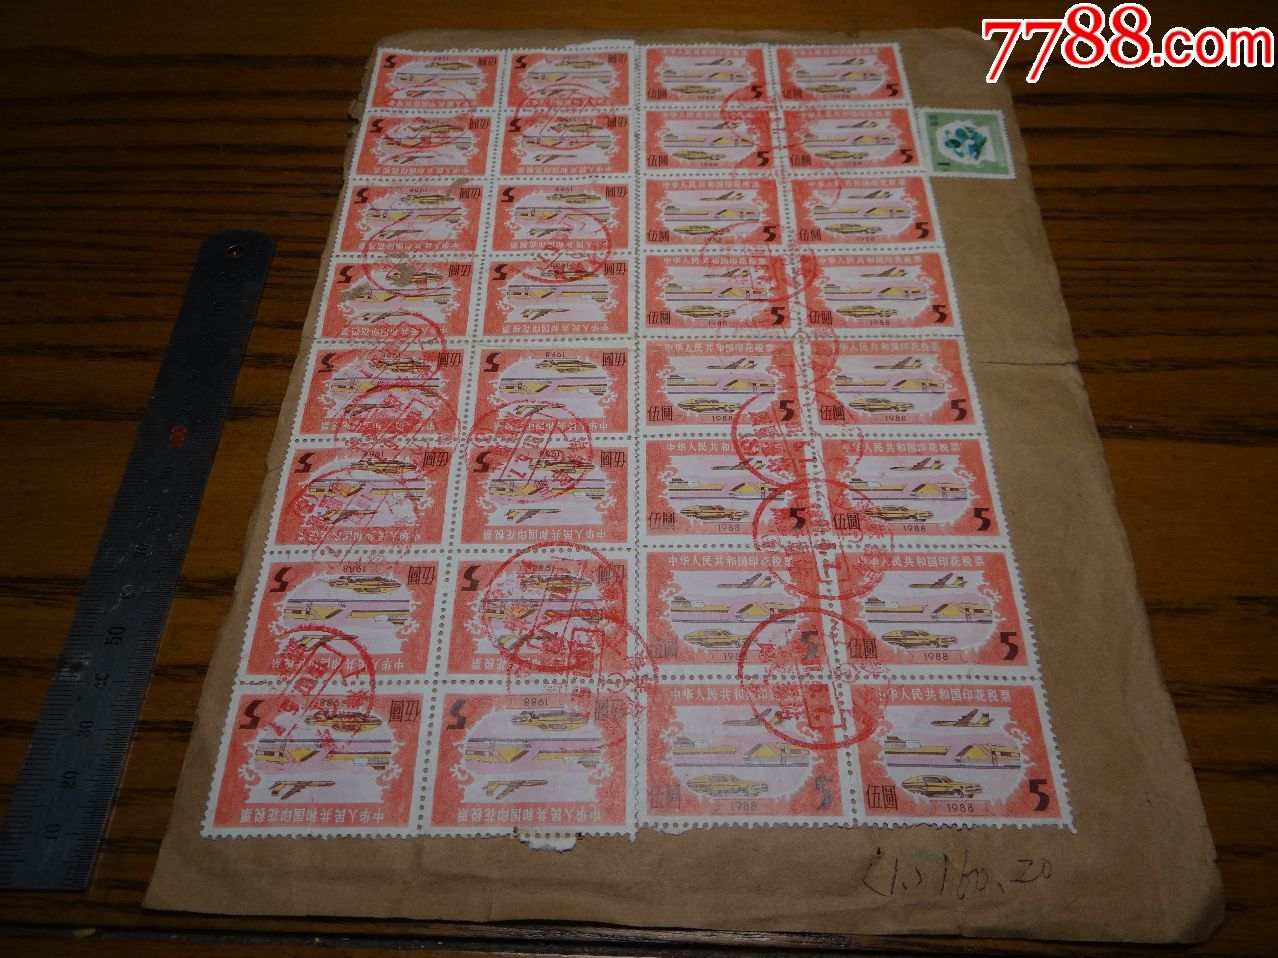 1988年中华人民共和国印花税票一张两面盖上海铁路局常州戚墅堰站邮戳